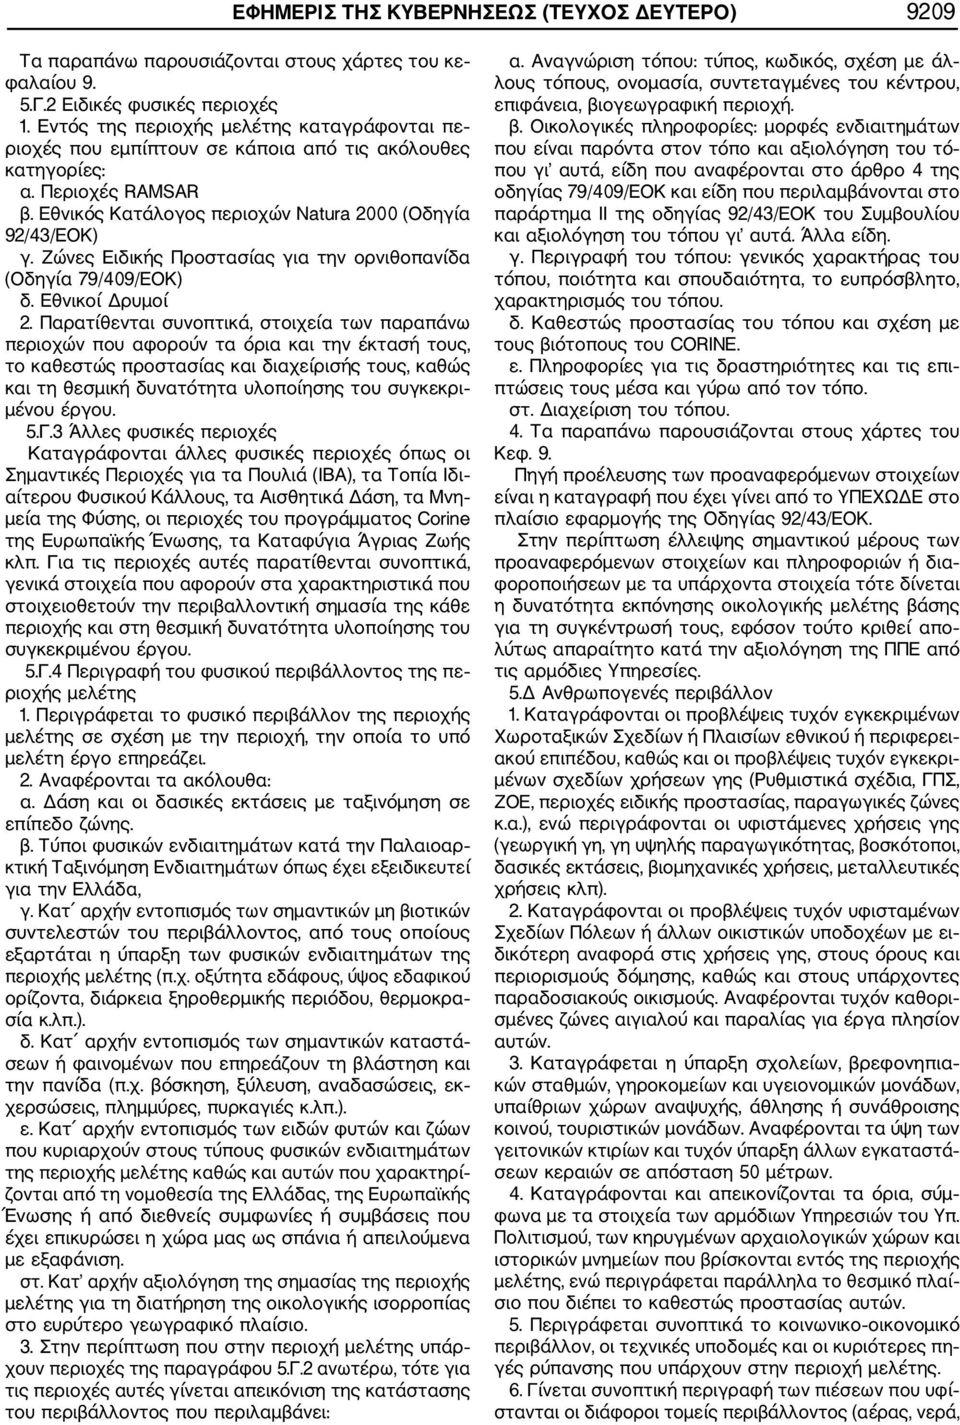 Ζώνες Ειδικής Προστασίας για την ορνιθοπανίδα (Οδηγία 79/409/ΕΟΚ) δ. Εθνικοί Δρυμοί 2.